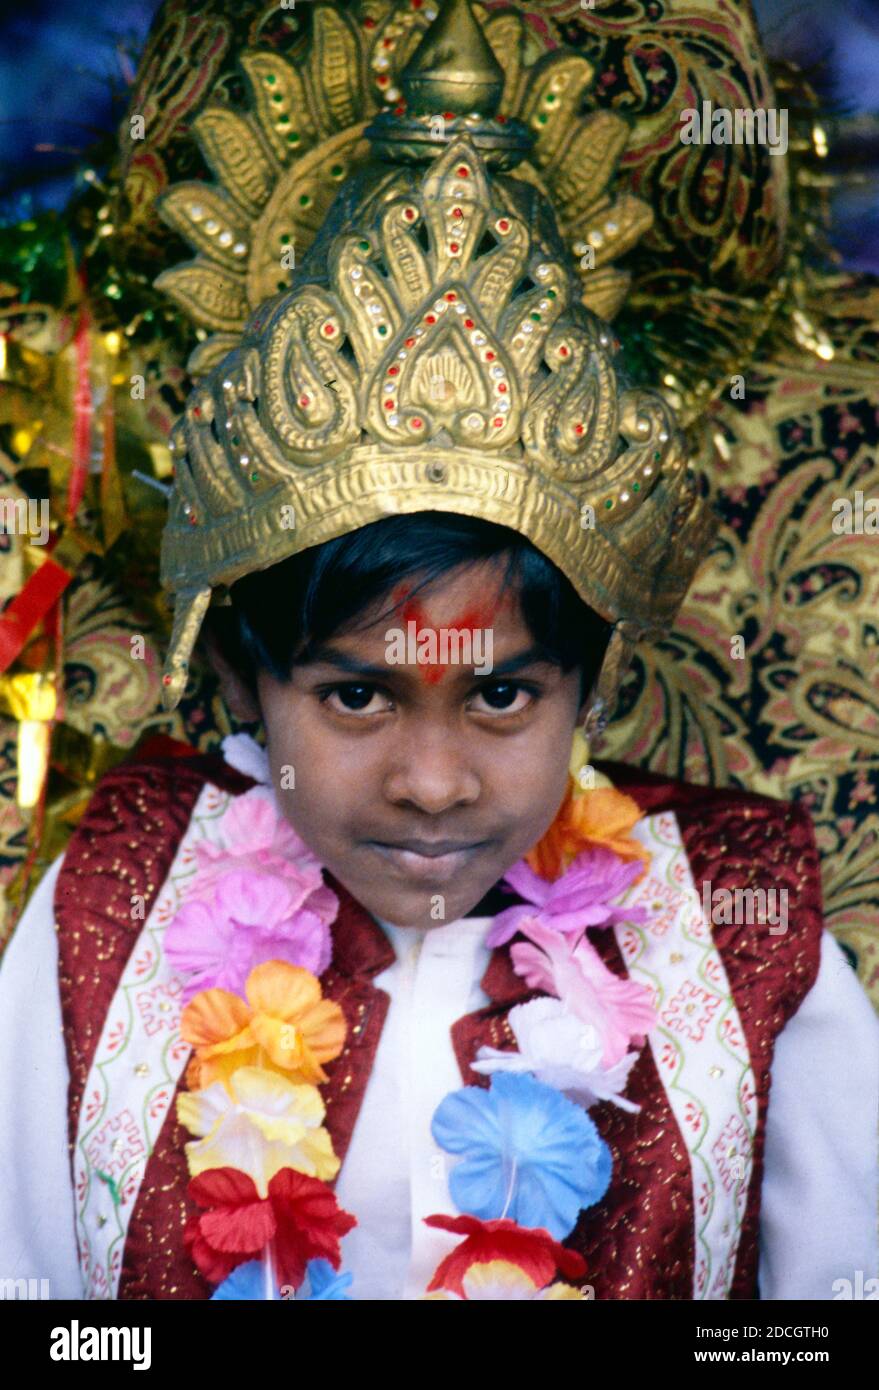 Porträt eines jungen Indianers oder eines hinduistischen Jungen, gekleidet als Prinz und drapiert mit Blumengirlanden für Diwali, oder das indische Lichterfest in Réunion Island Frankreich Stockfoto